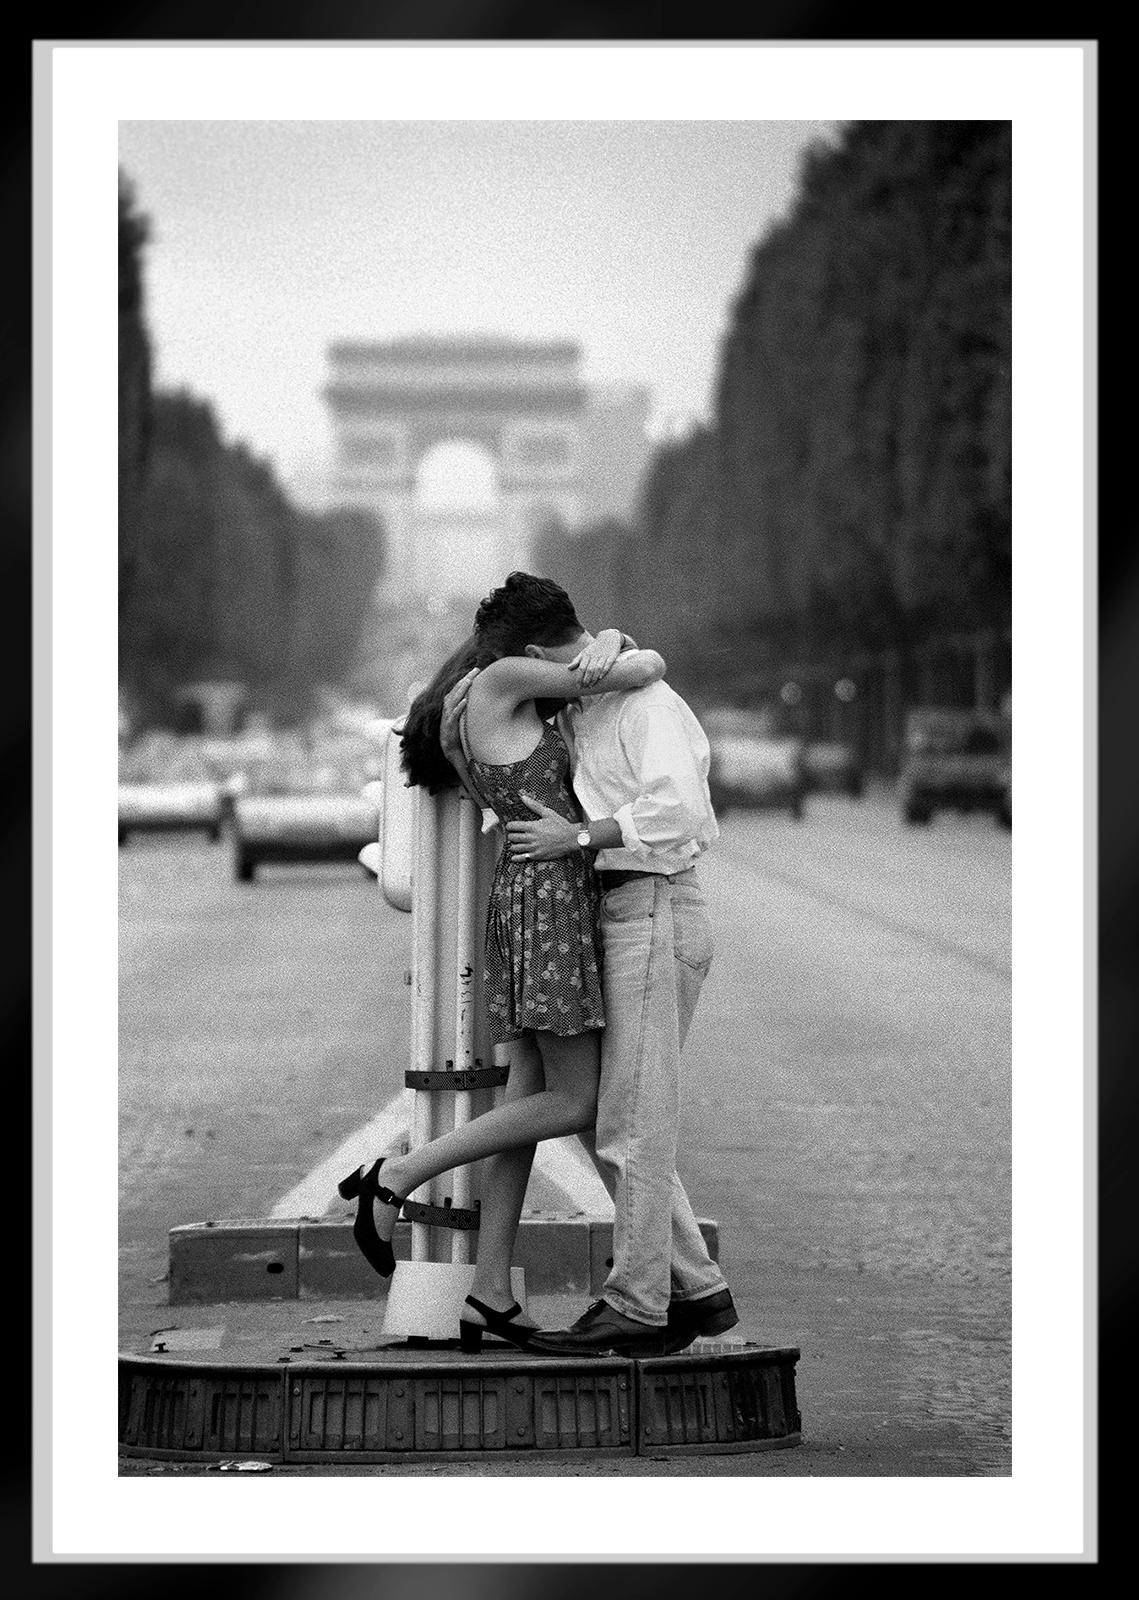  Pariser Romanze  -  Signierter Archivpigmentdruck in limitierter Auflage   -  Auflage von 5

Dieses Bild wurde 1994 in Paris auf den Champs-Elysées vor dem Arc de Triomphe gefilmt. 
Das Negativ wurde gescannt und eine digitale Datei erstellt, die